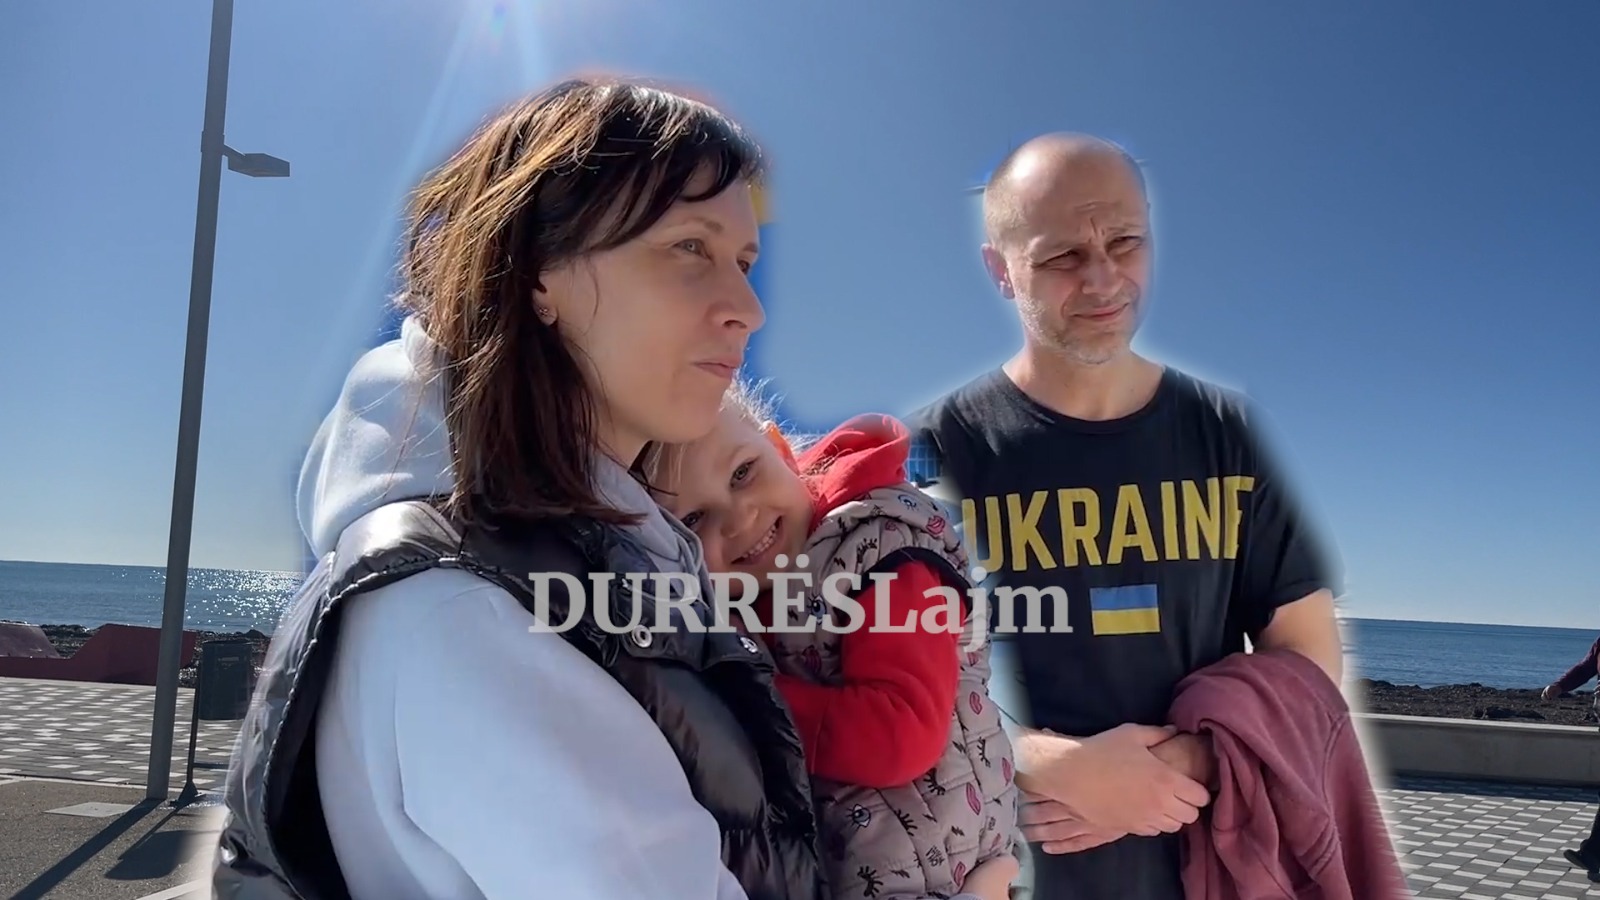 Në diell pranë detit me sytë nga lufta, historia e jetës në Durrës e familjes nga Ukraina (VIDEO)